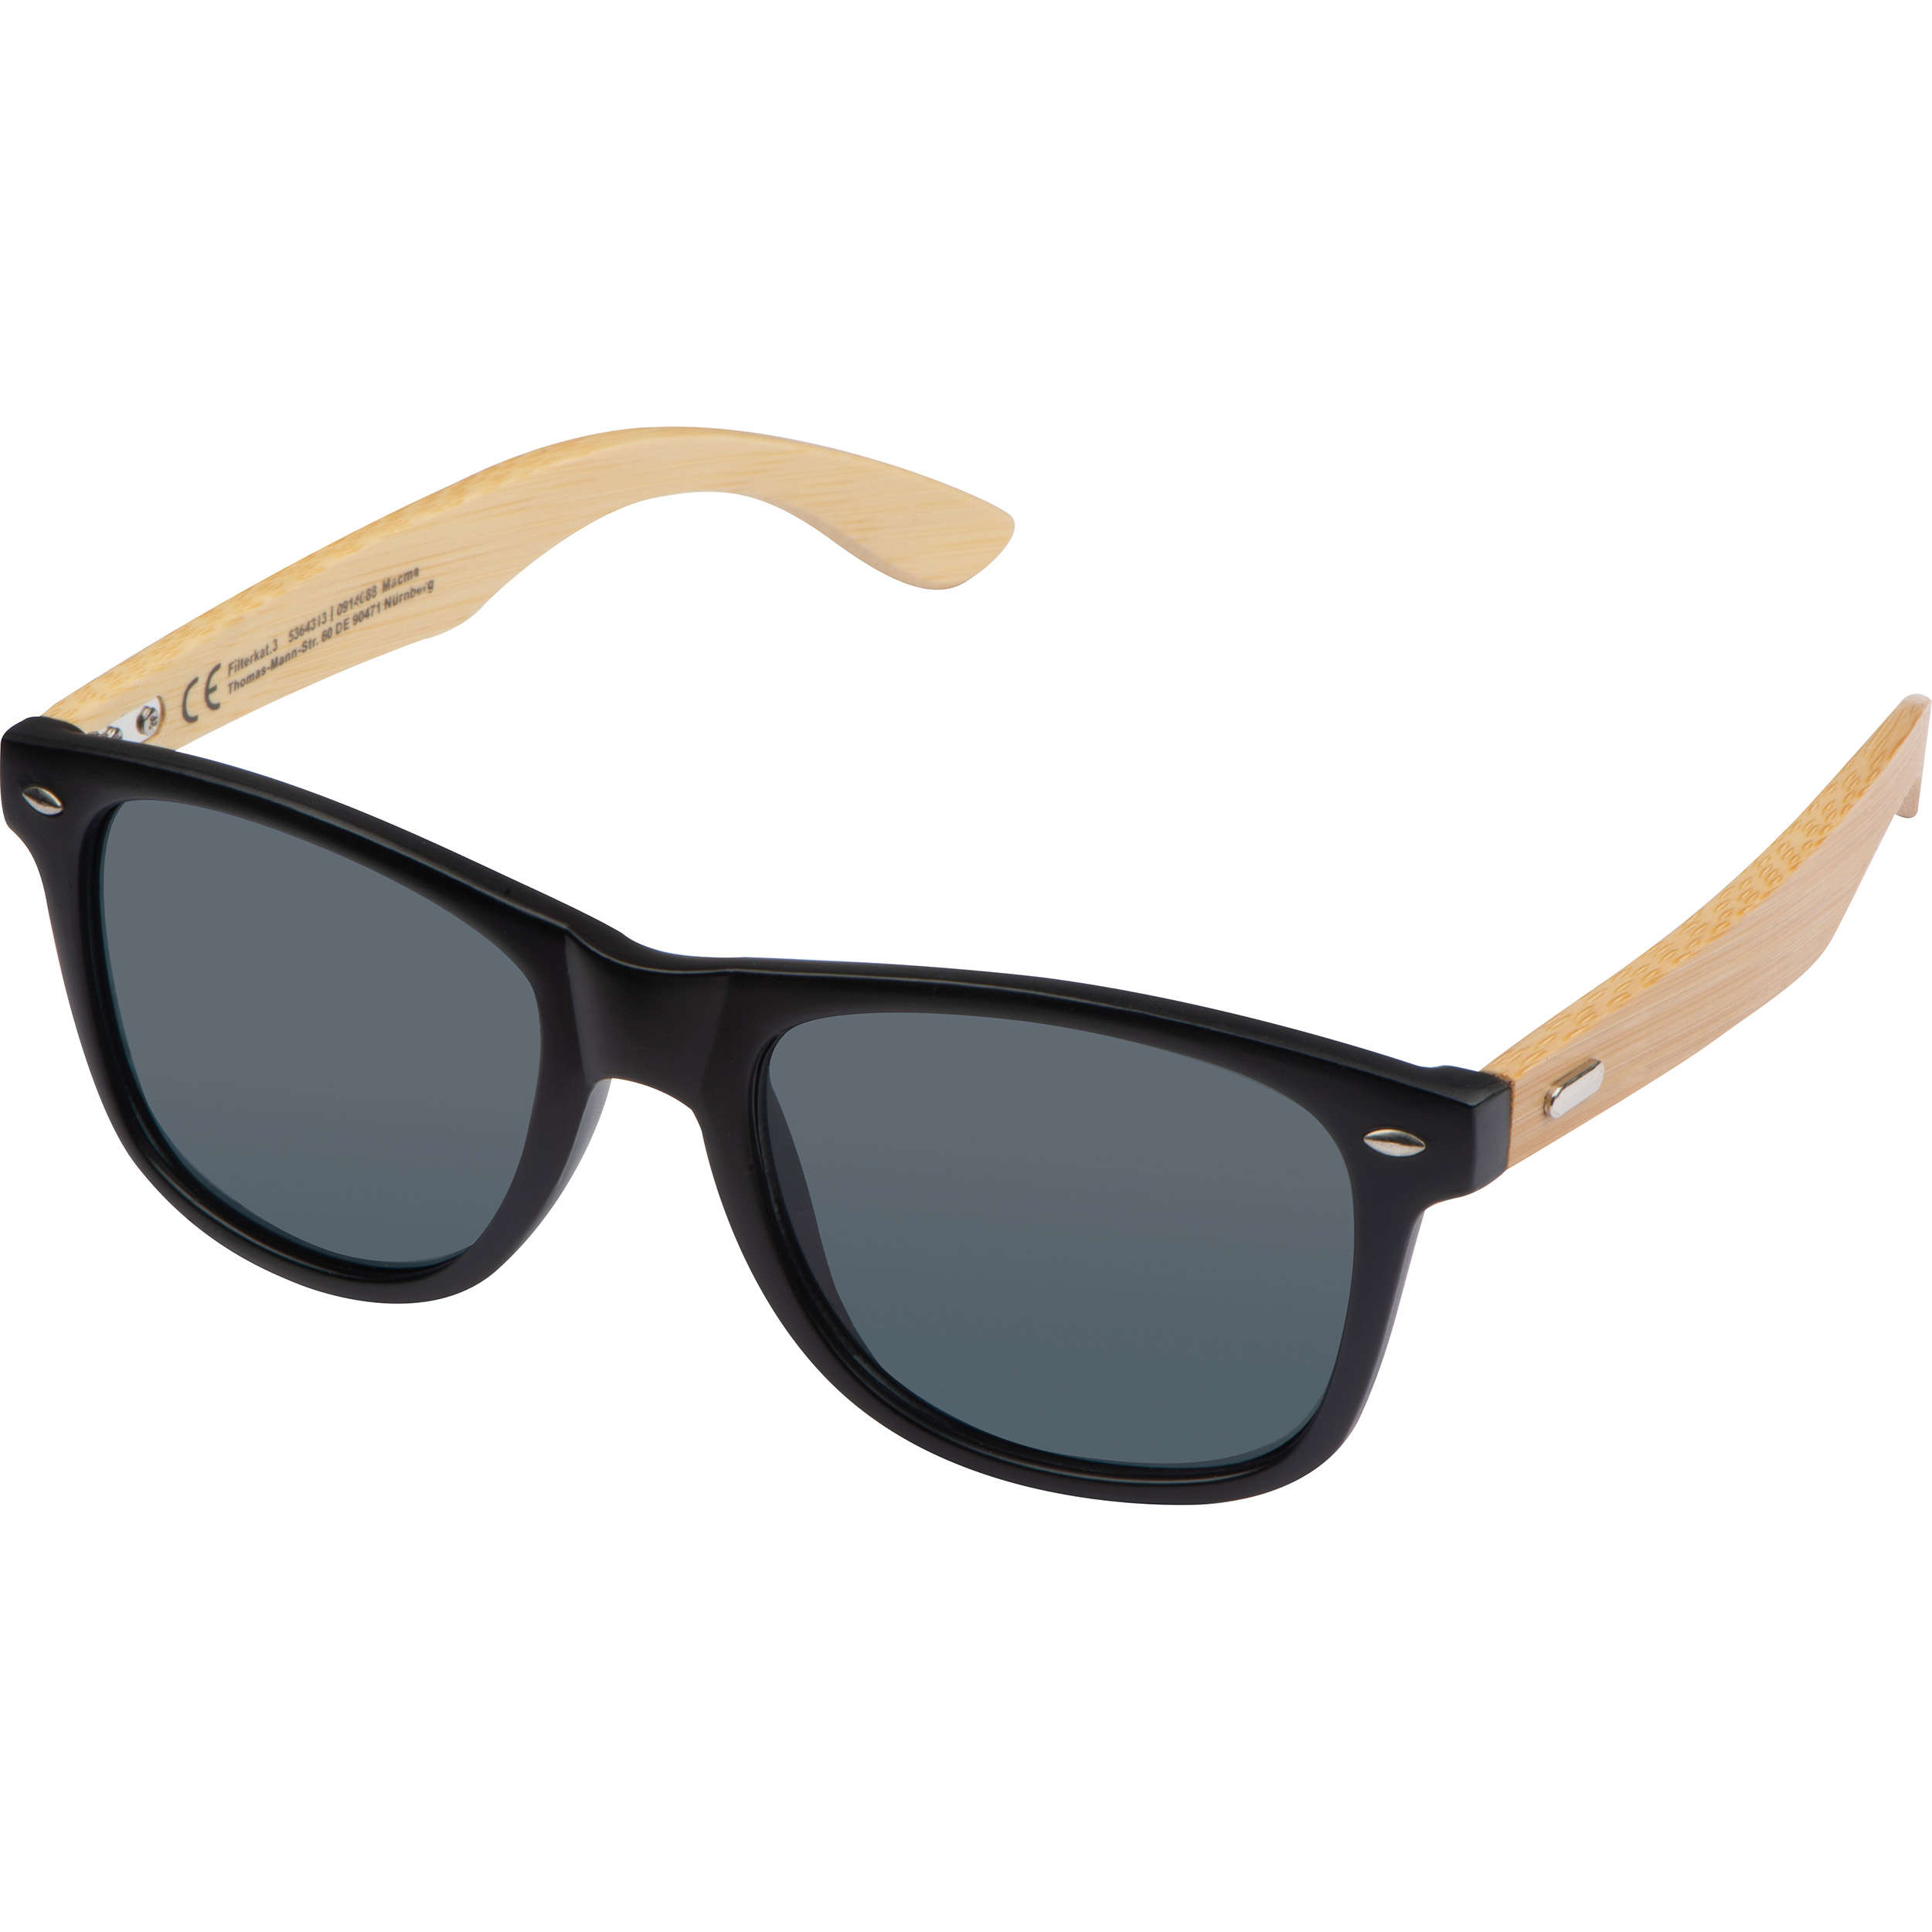 EcoFold UV Sunglasses - Mattingley - King's Norton